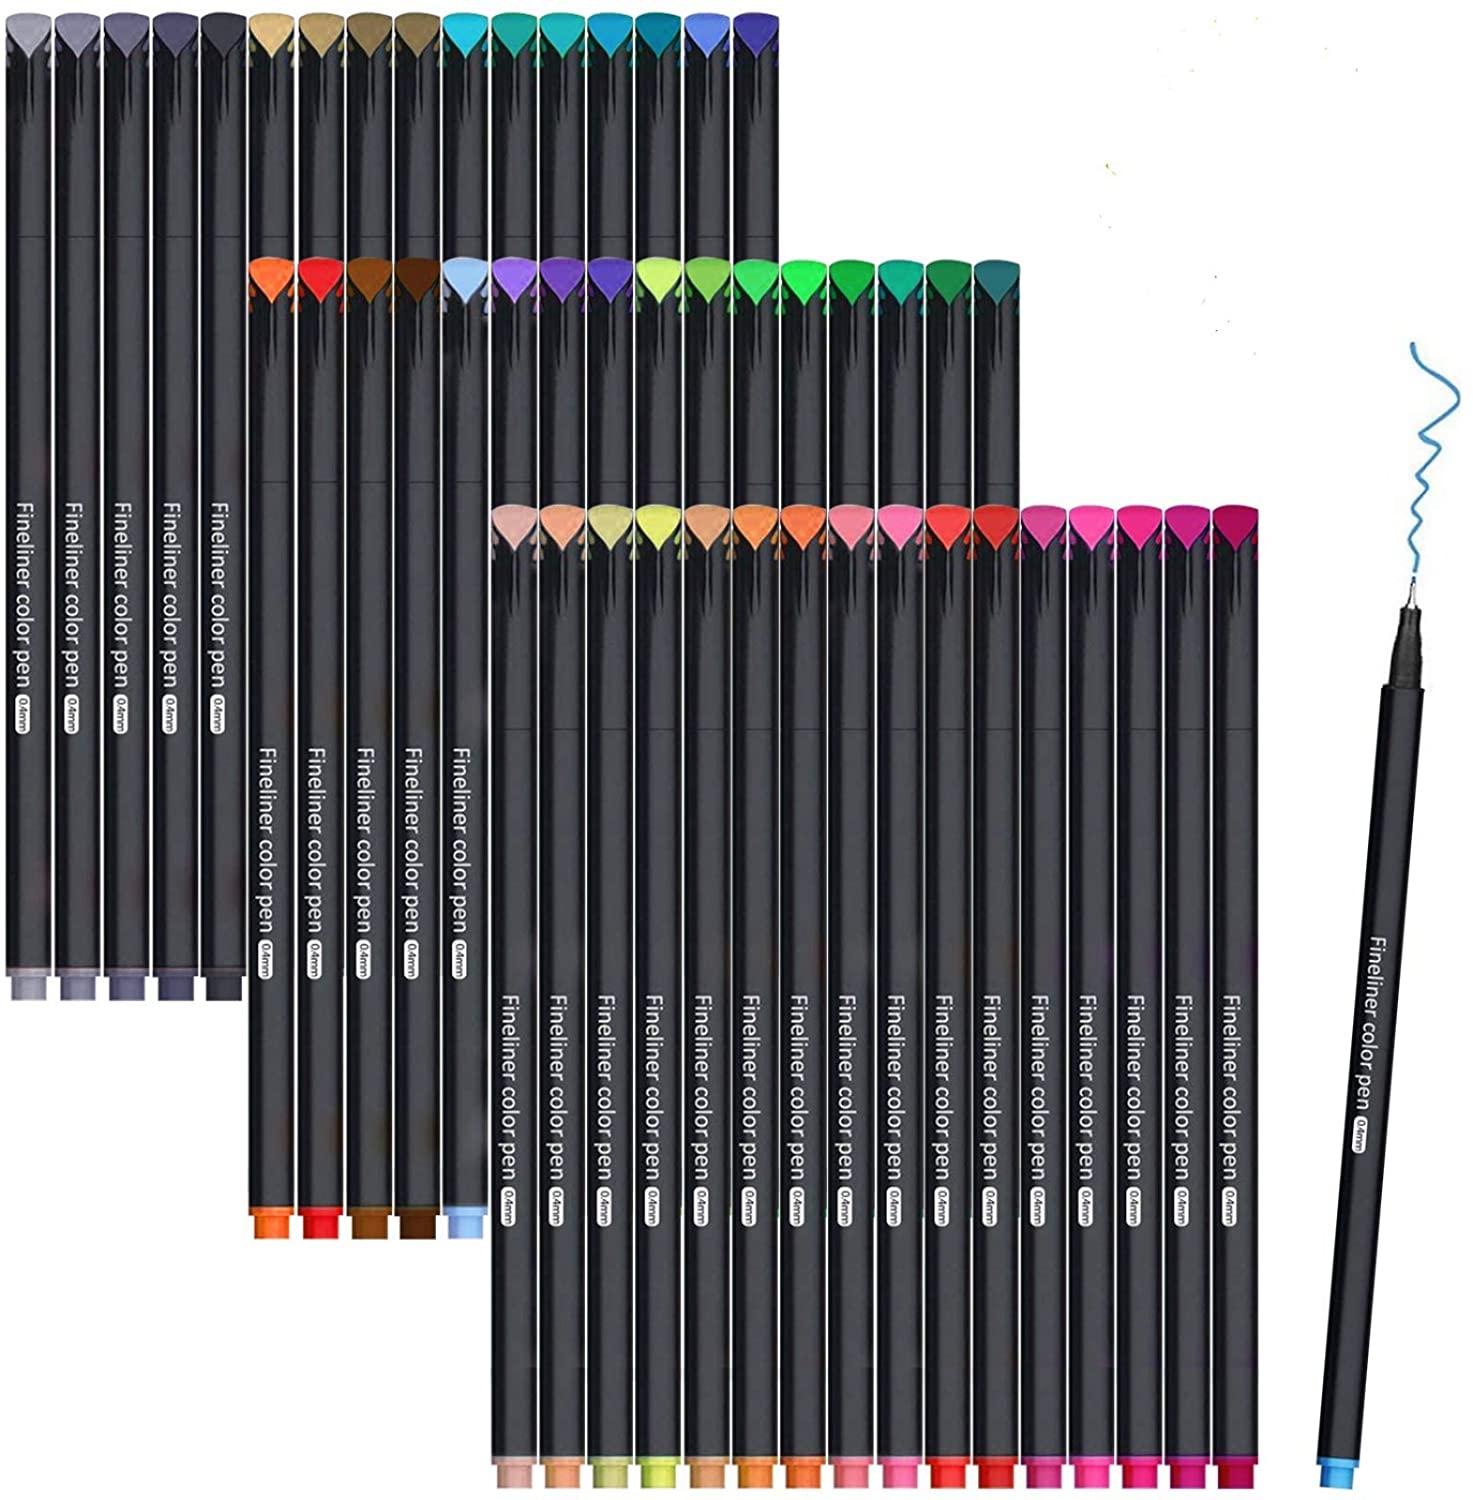 100 색 저널 플래너 컬러 펜 Fineliner 펜 저널링, 색칠 공부 쓰기, 메모 복용, 달력, 플래너